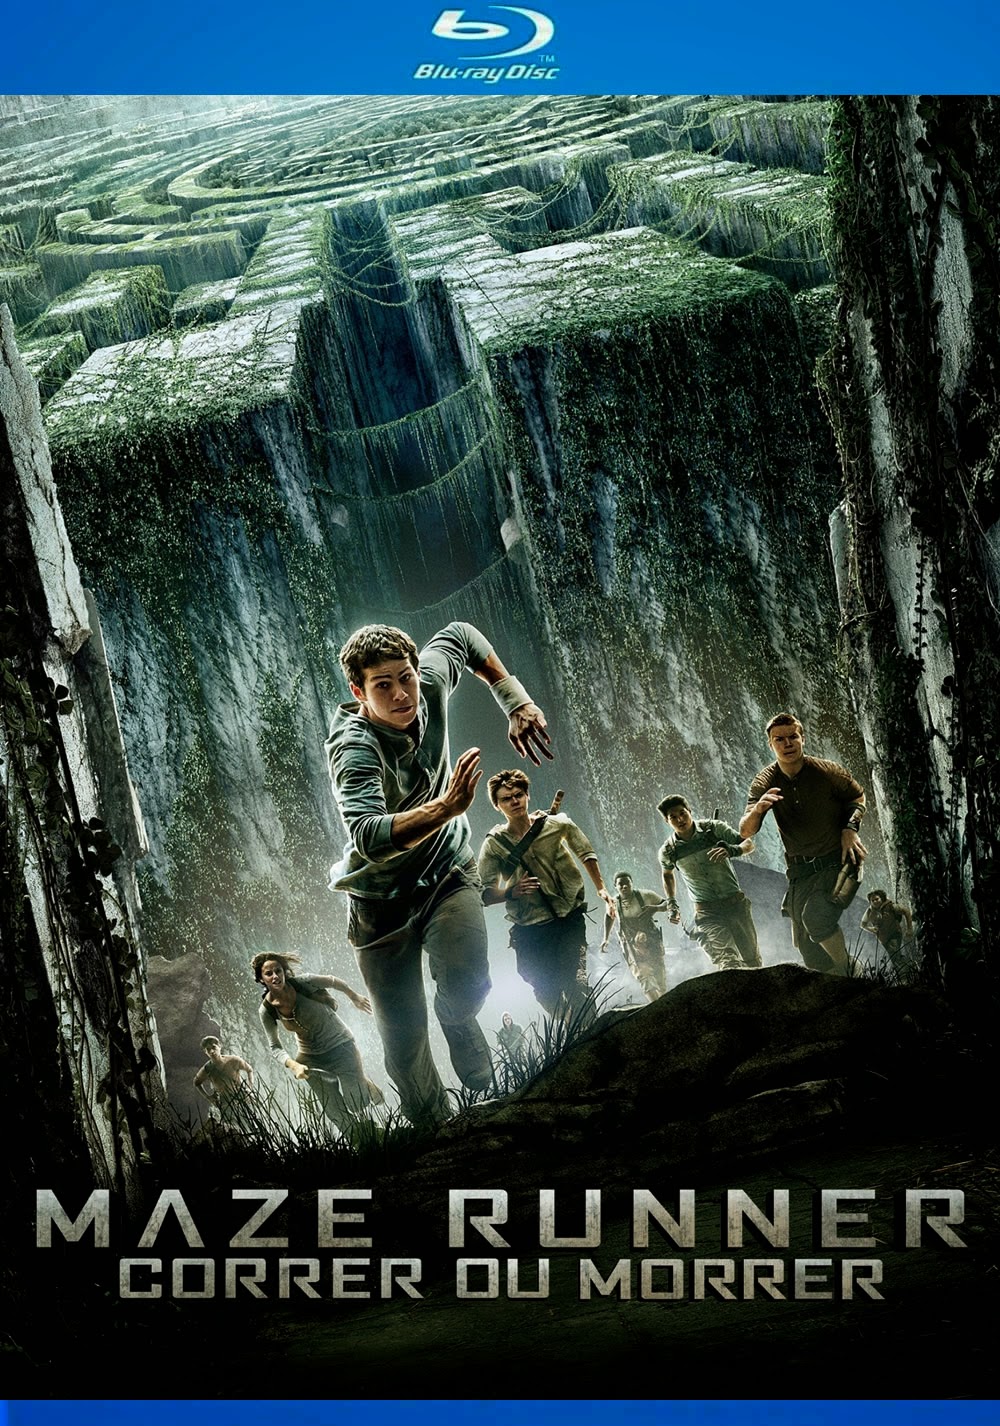 Maze Runner – Correr ou Morrer [ 2014 ] Bluray 720p Dublado Assistr e Baixar